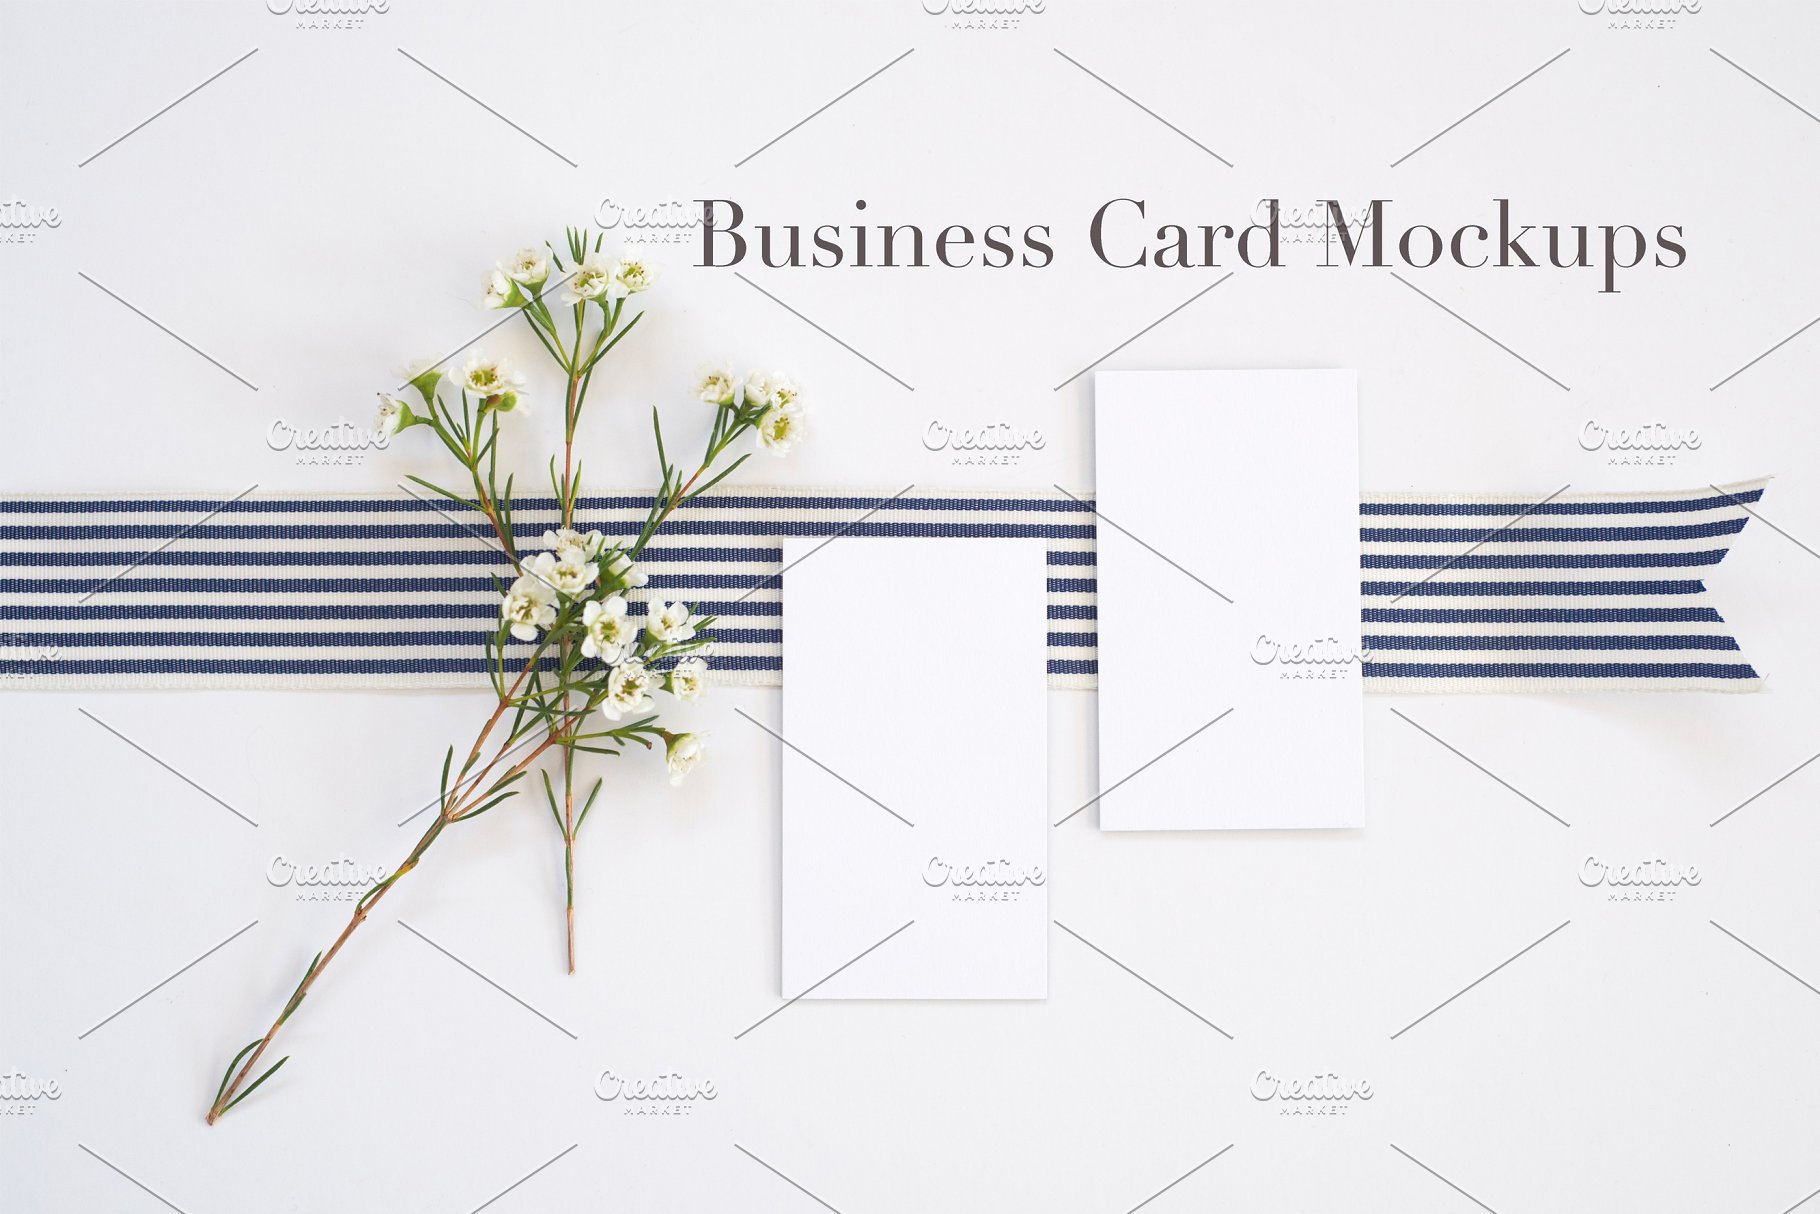 时尚简约企业名片展示样机 Styled Stock | Business Card Mockups插图(4)